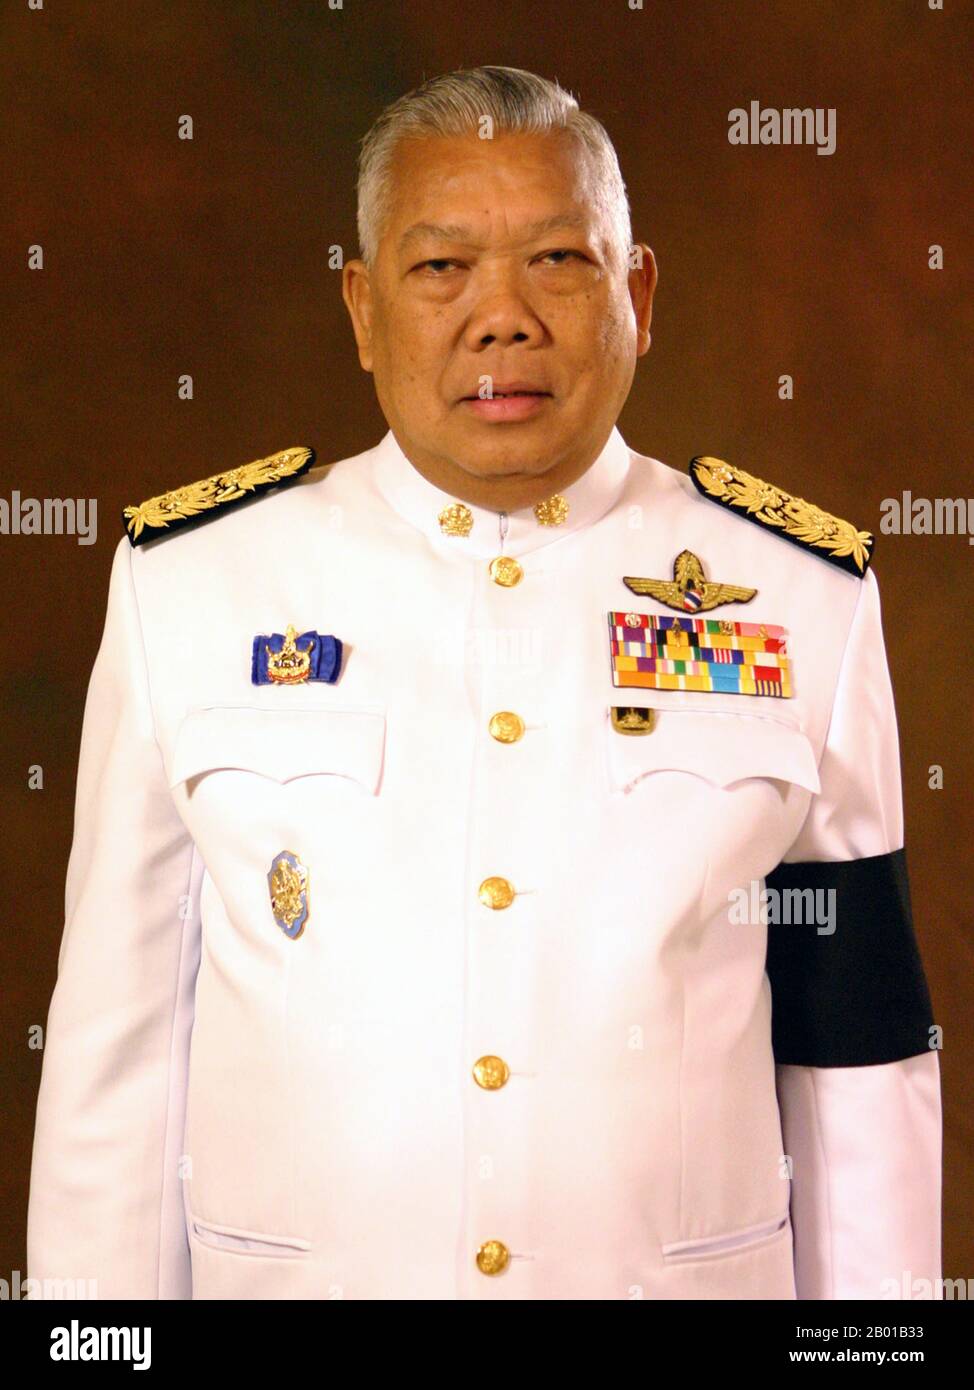 Samak Sundaravej (* 13. Juni 1935 in Thailand; † 24. November 2009) war ein thailändischer chinesischer Politiker, der 2008 kurzzeitig Premierminister von Thailand und Verteidigungsminister sowie 2008 Führer der Partei Für Volksmacht war. Stockfoto